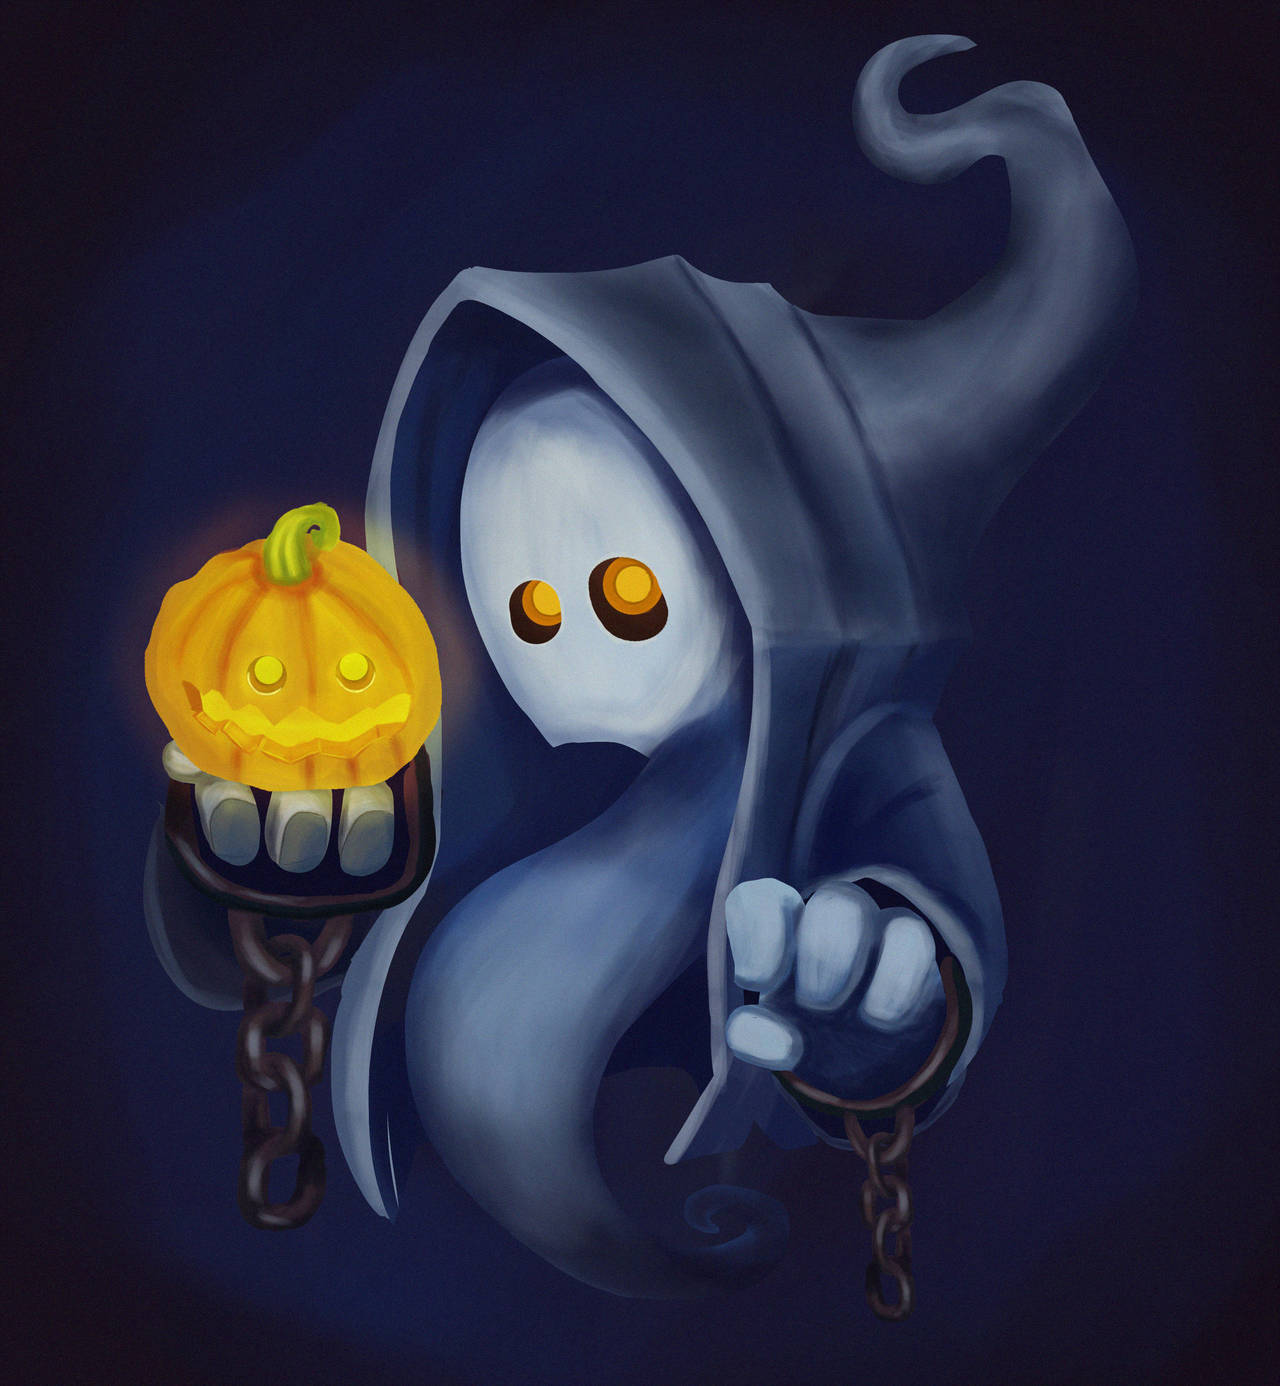 Halloween Ghost by ErickRychlewski on DeviantArt